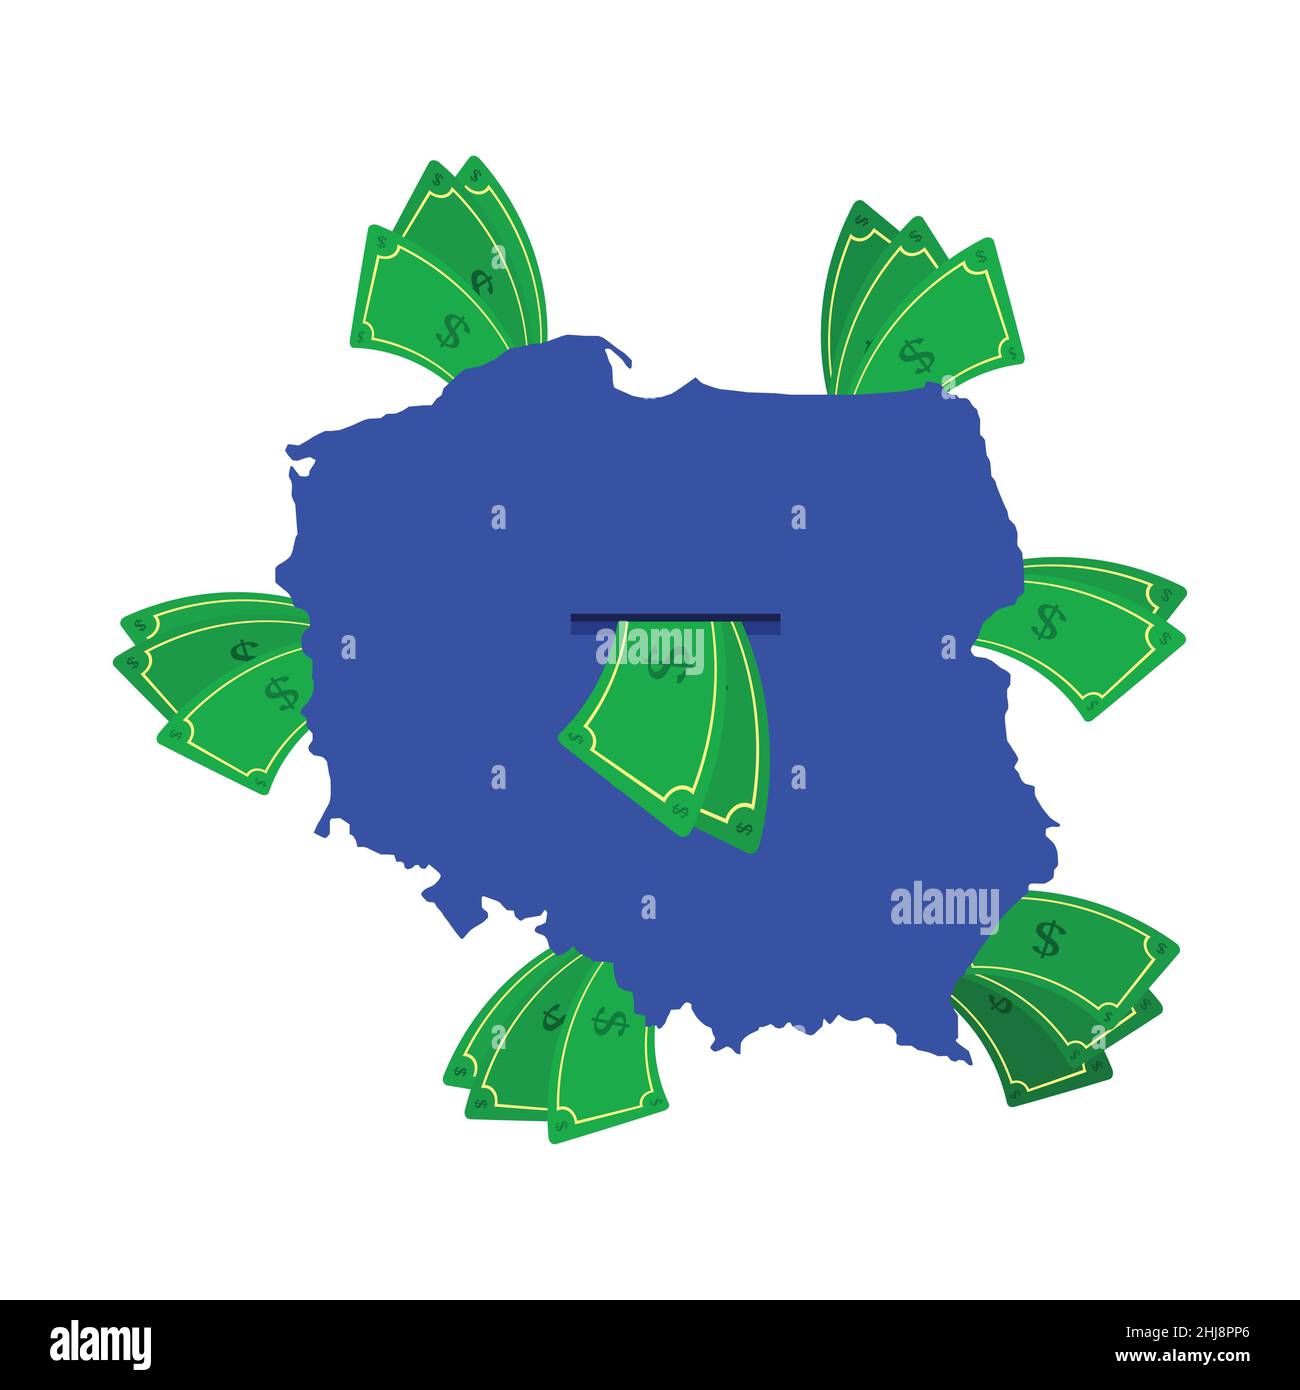 Polen Karte in blau mit Geldscheinen um. Geld verlässt das Zentrum des Landes. Wirtschaft des polnischen Landes. Weißer Hintergrund. Isoliert. Stock Vektor